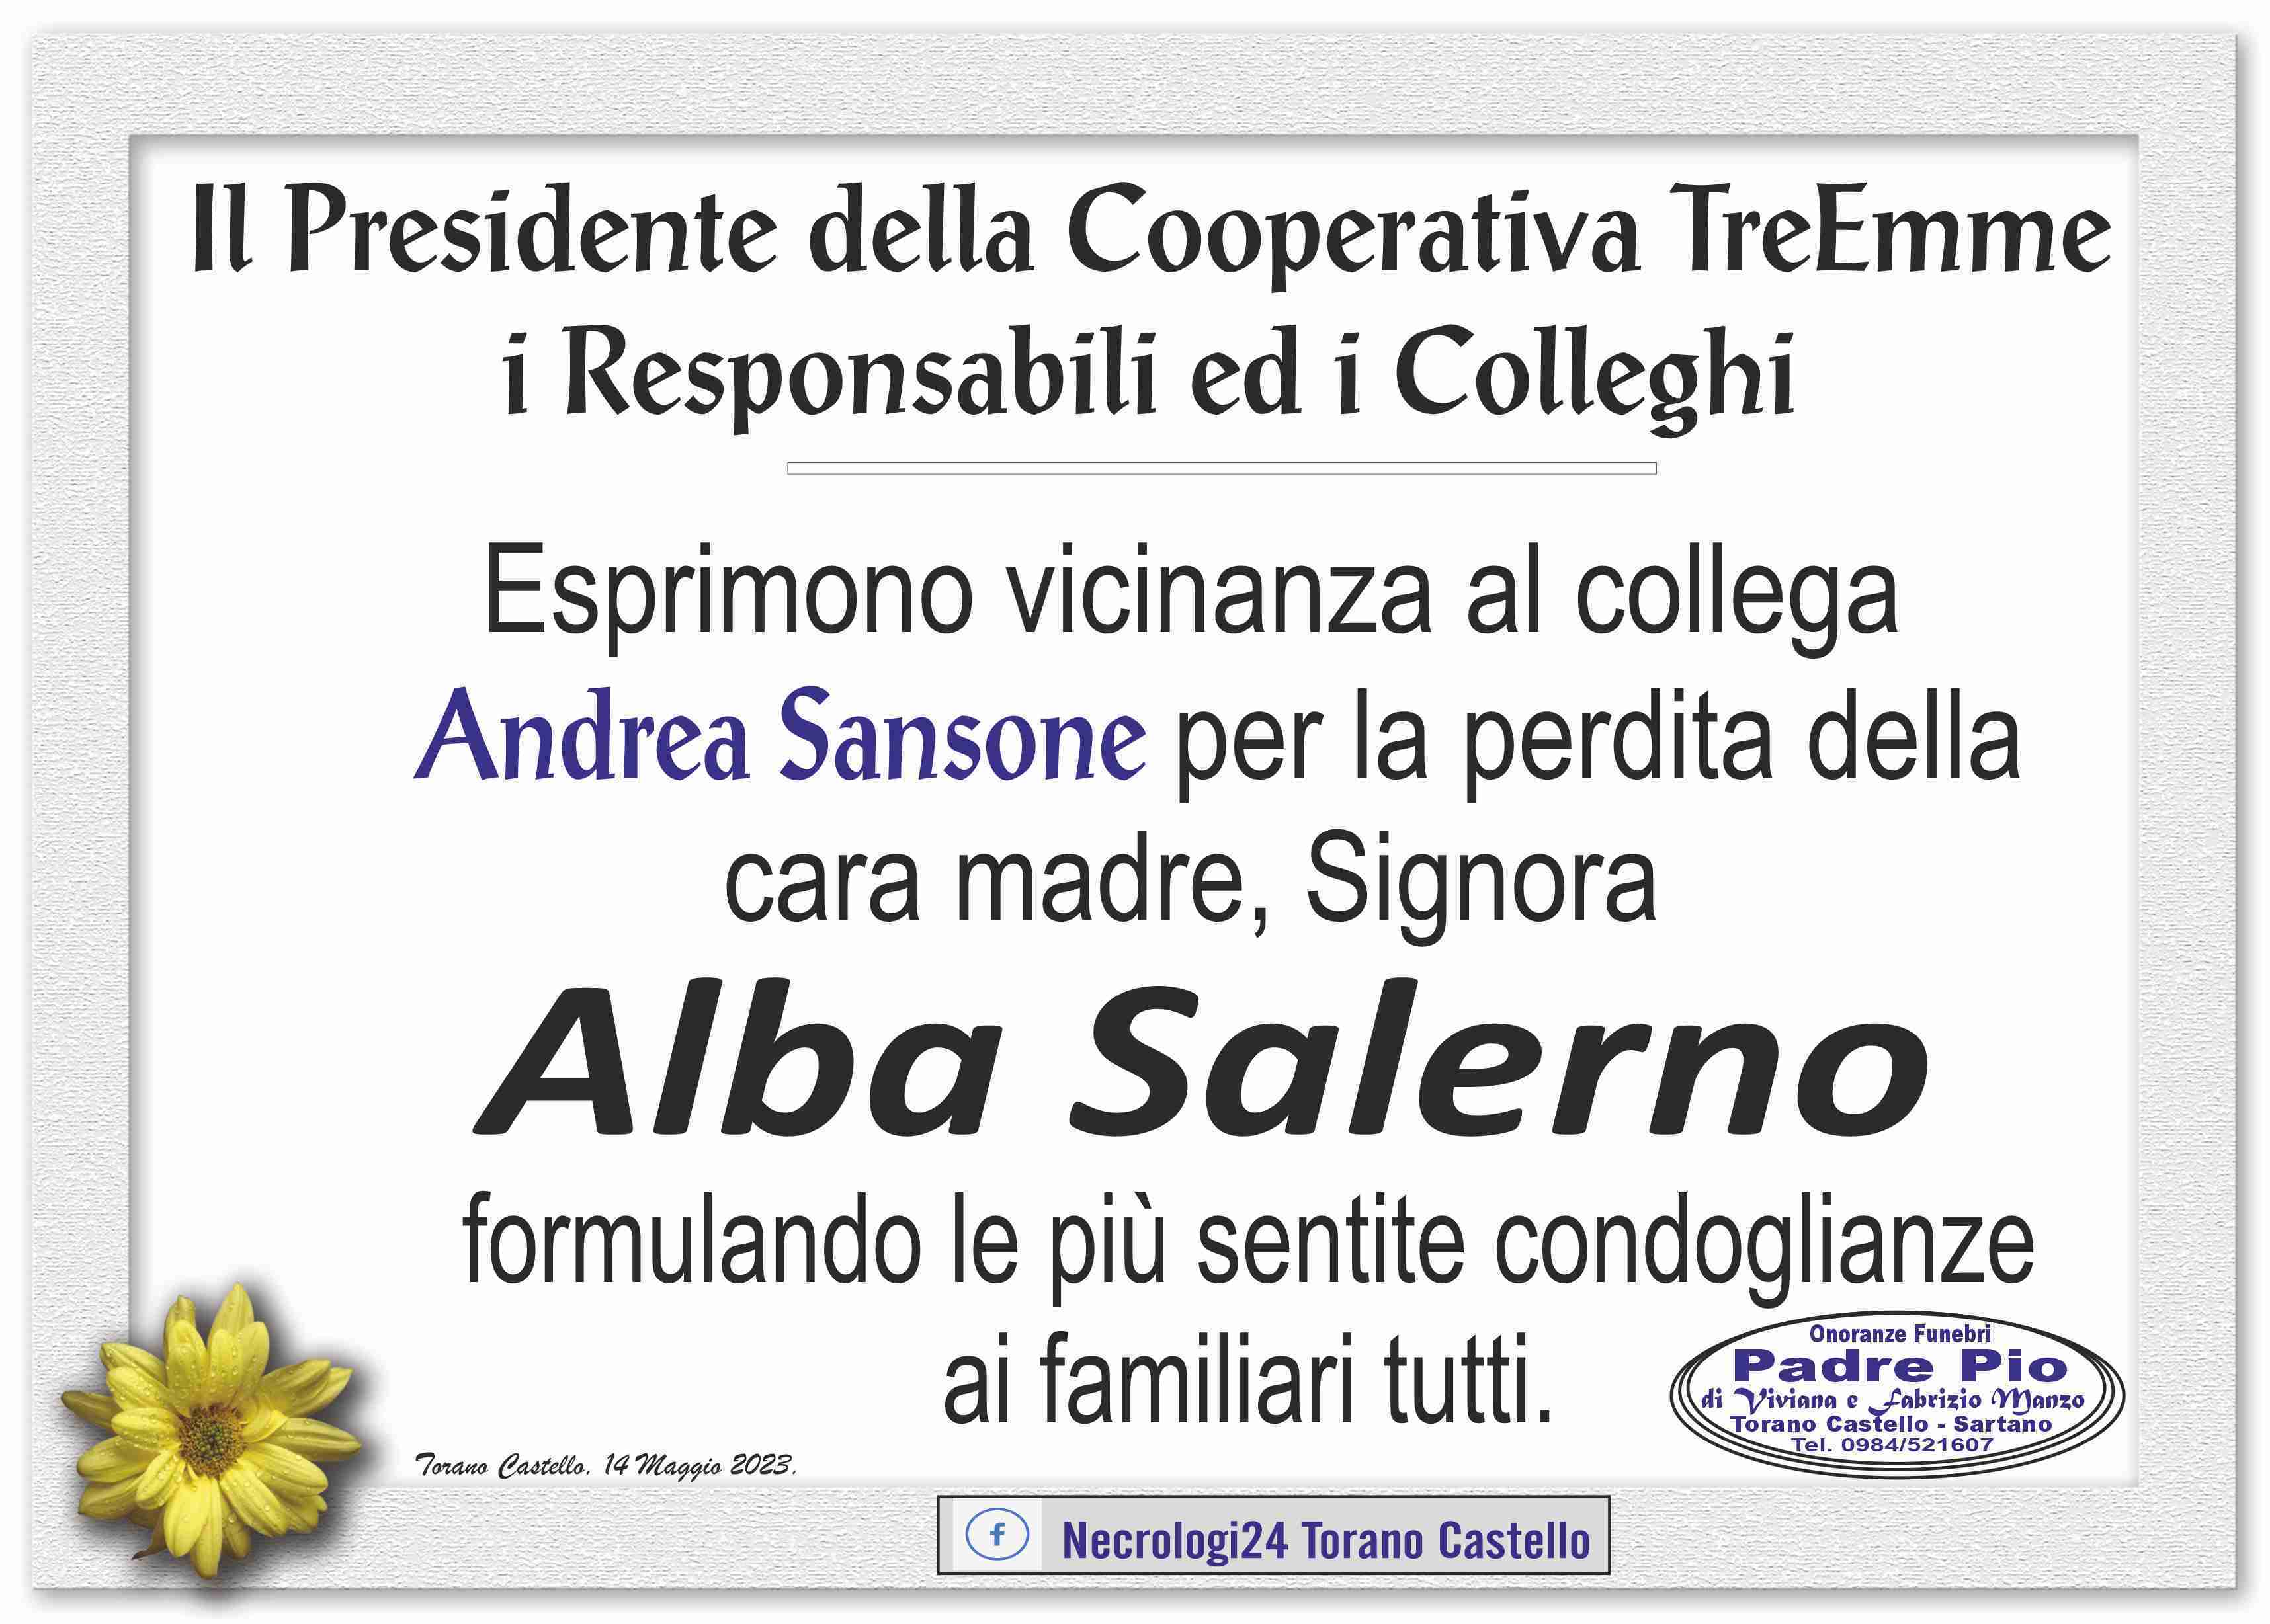 Alba Salerno